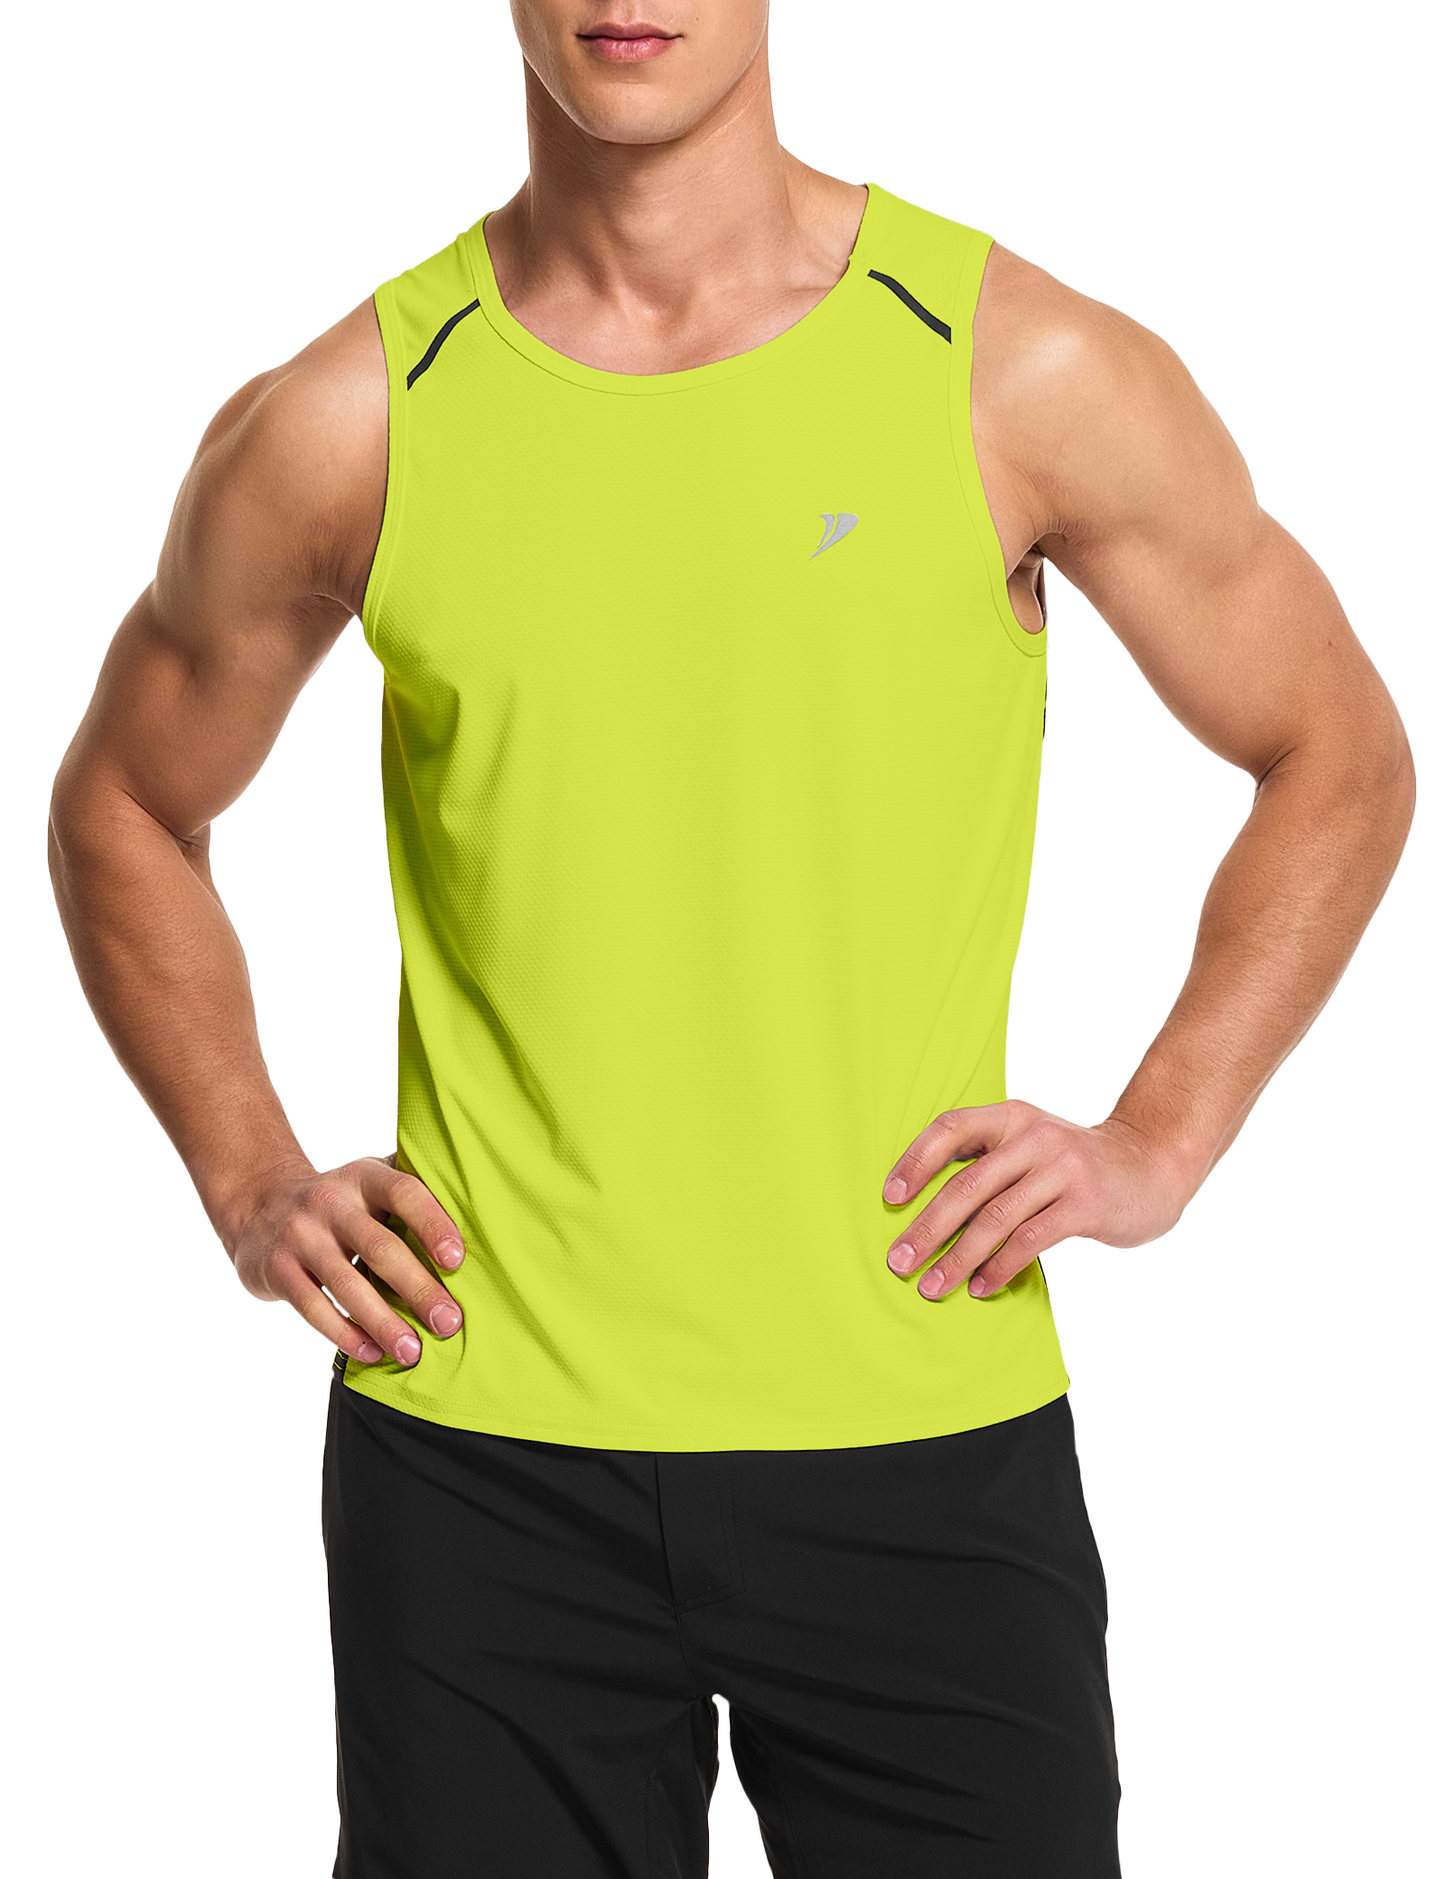 mens running workout gym swim tank top neon yellow